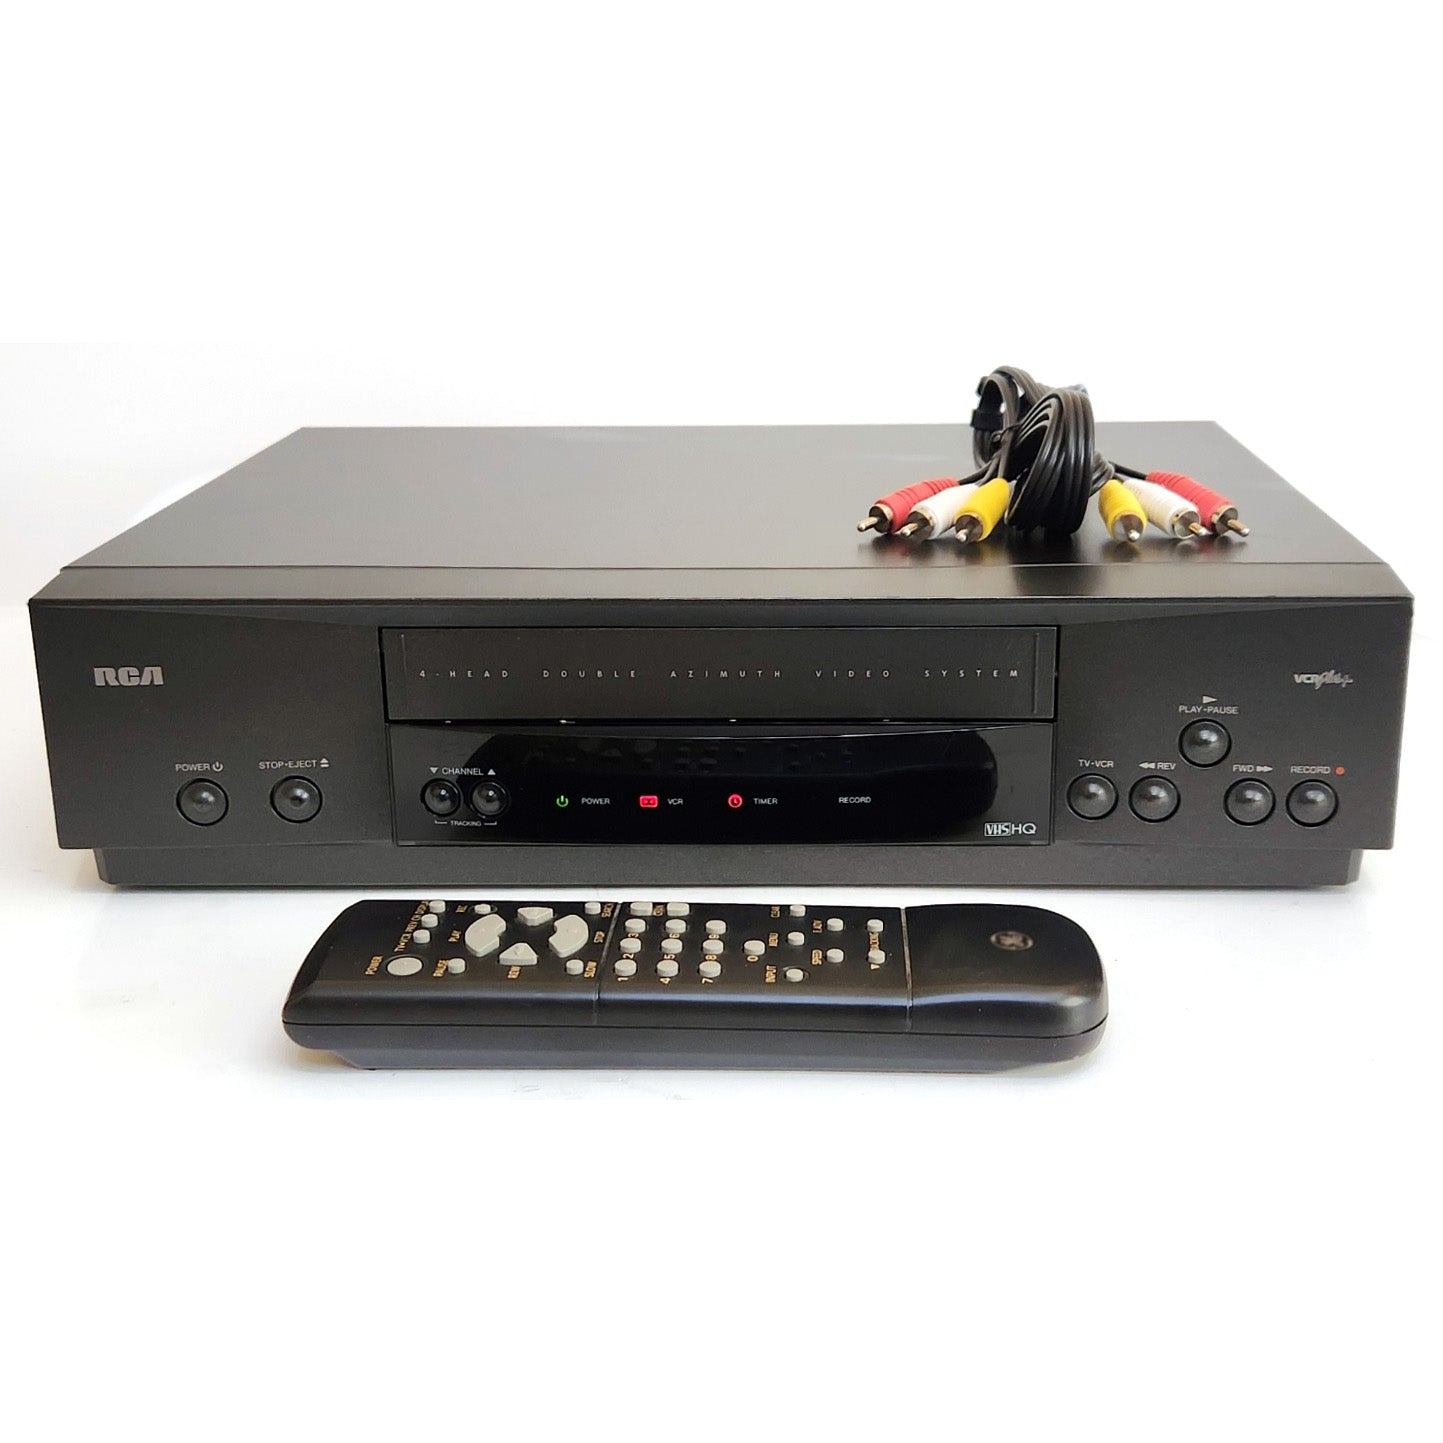 RCA VR519 VCR, 4-Head Mono